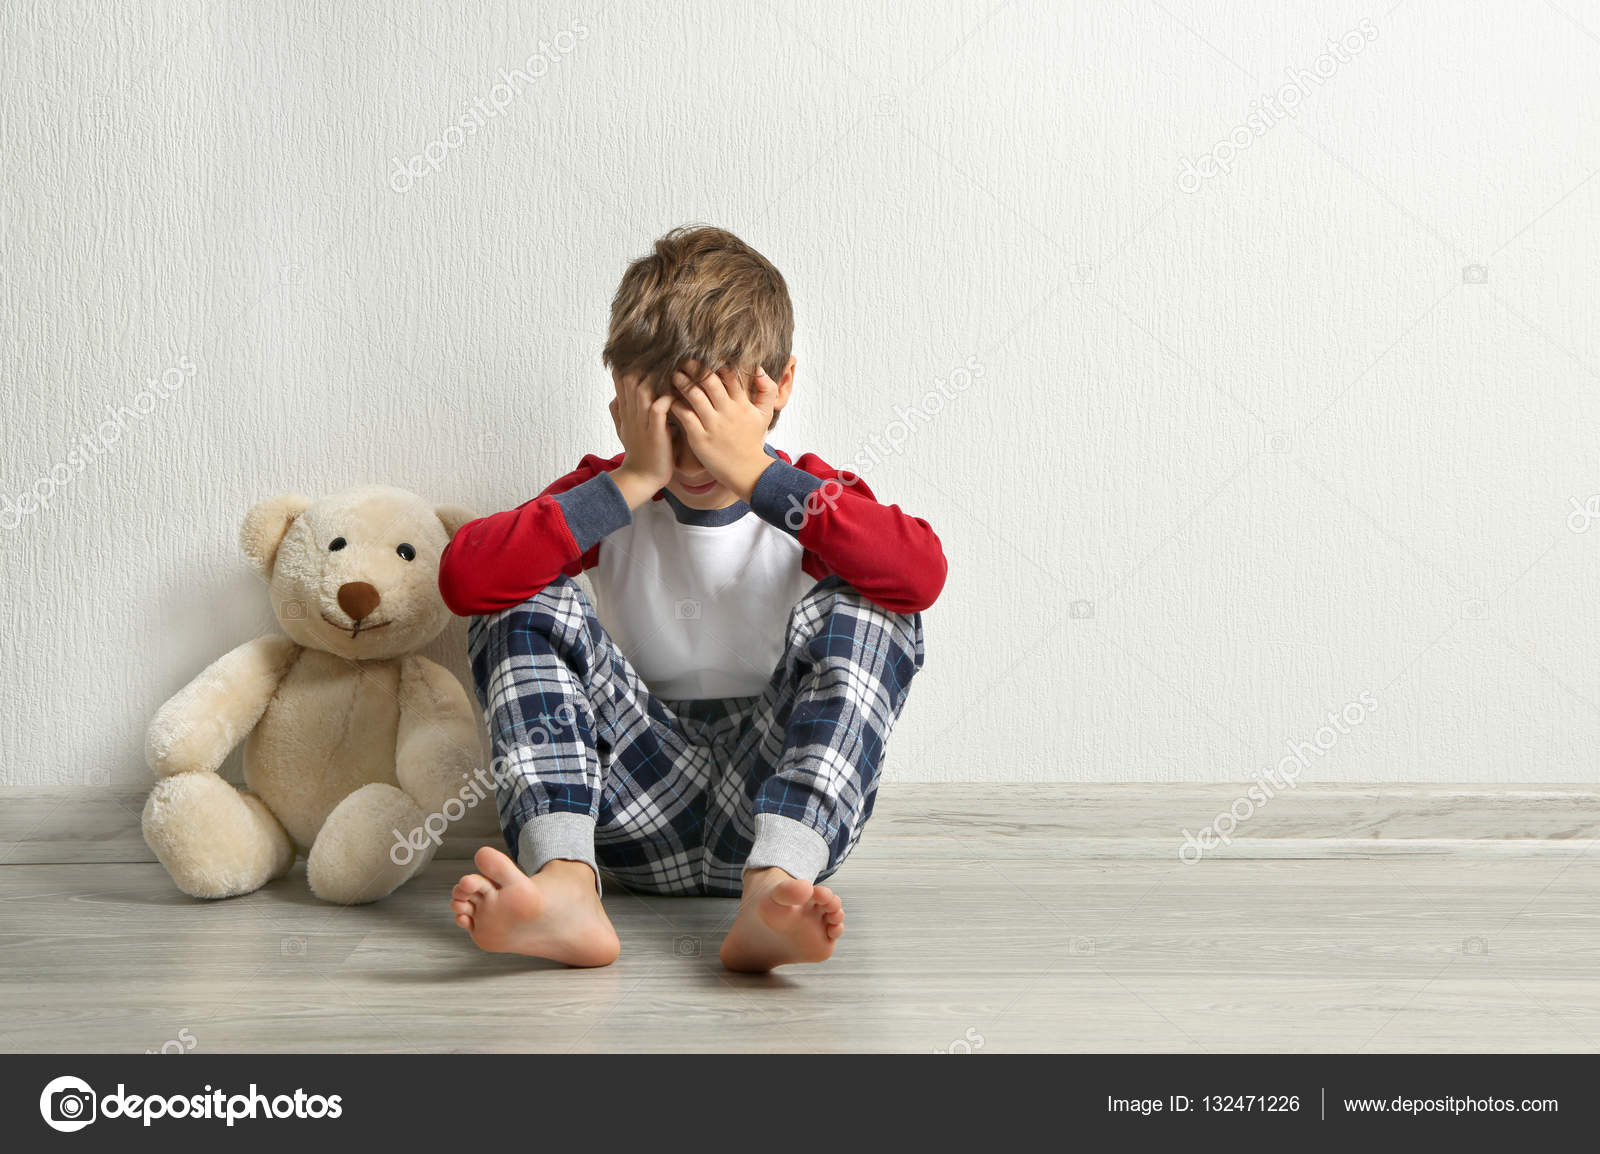 boy with teddy bear